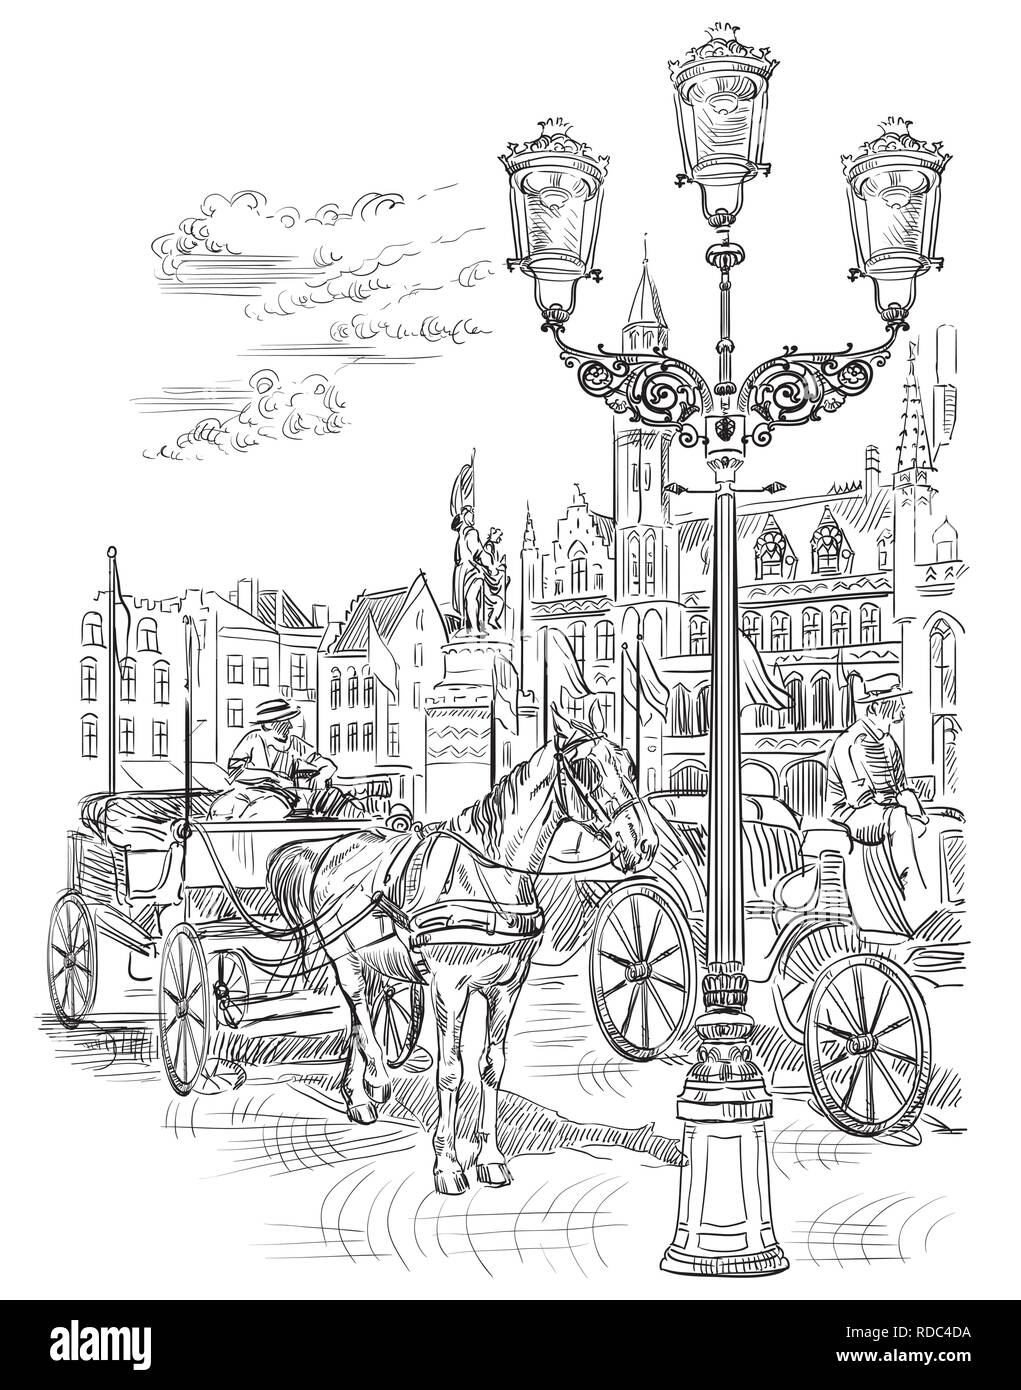 Vista sul Grote Markt Square nella città medievale di Bruges, Belgio. Punto di riferimento del Belgio. Cavalli, carri e lanterne sulla piazza del mercato di Bruges. Il vettore ha Illustrazione Vettoriale